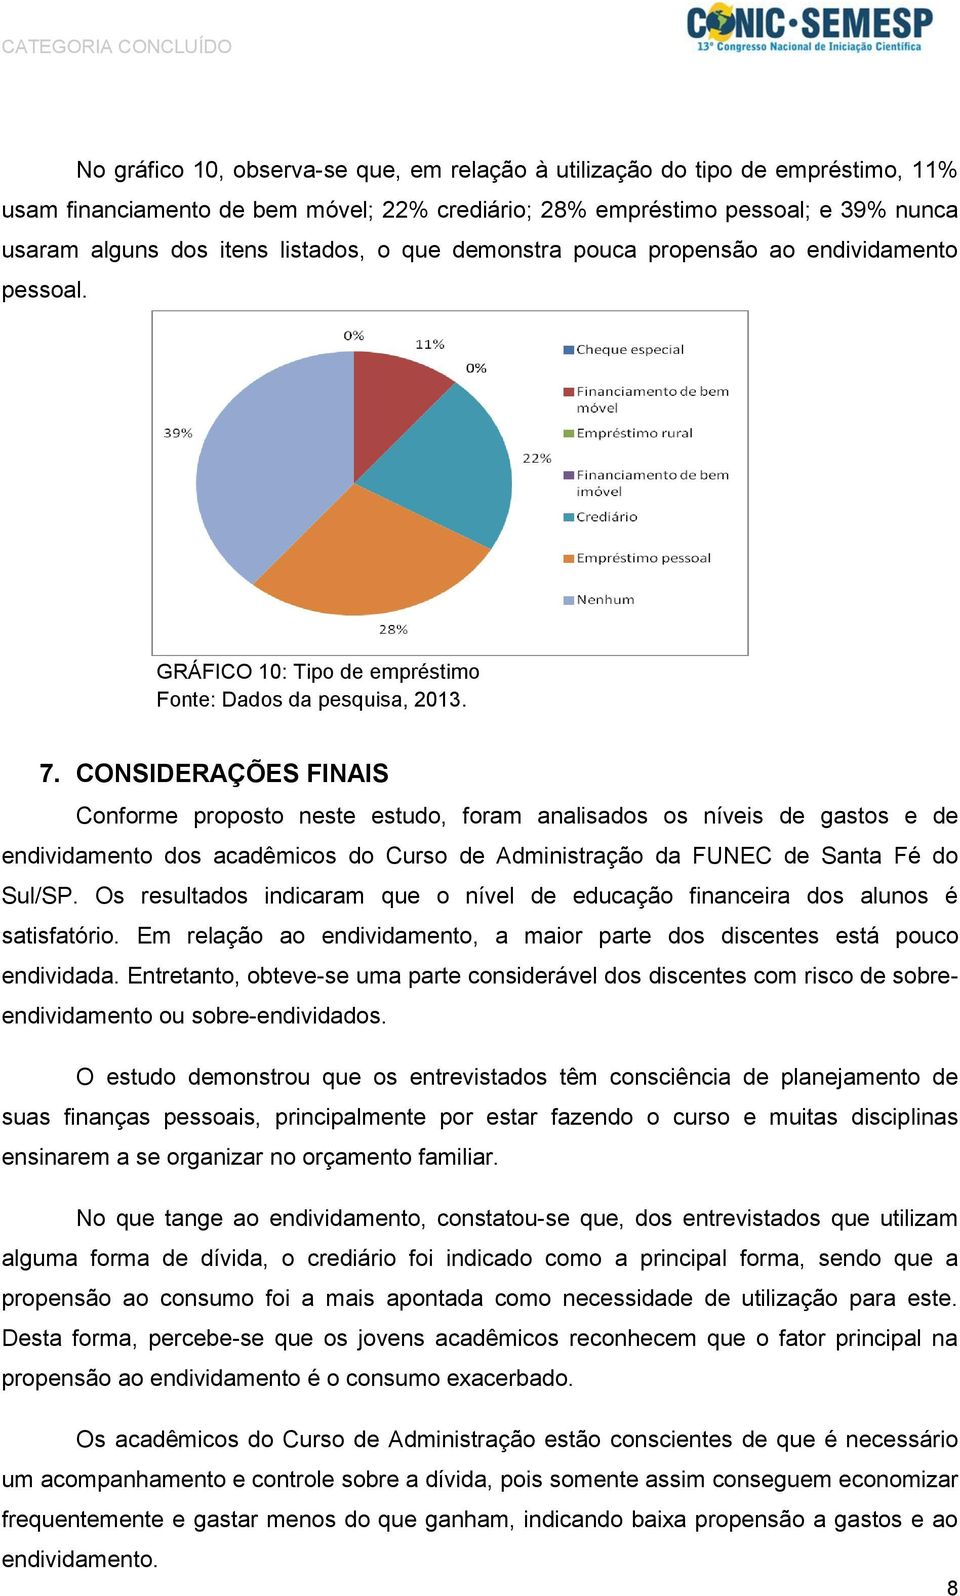 CONSIDERAÇÕES FINAIS Conforme proposto neste estudo, foram analisados os níveis de gastos e de endividamento dos acadêmicos do Curso de Administração da FUNEC de Santa Fé do Sul/SP.